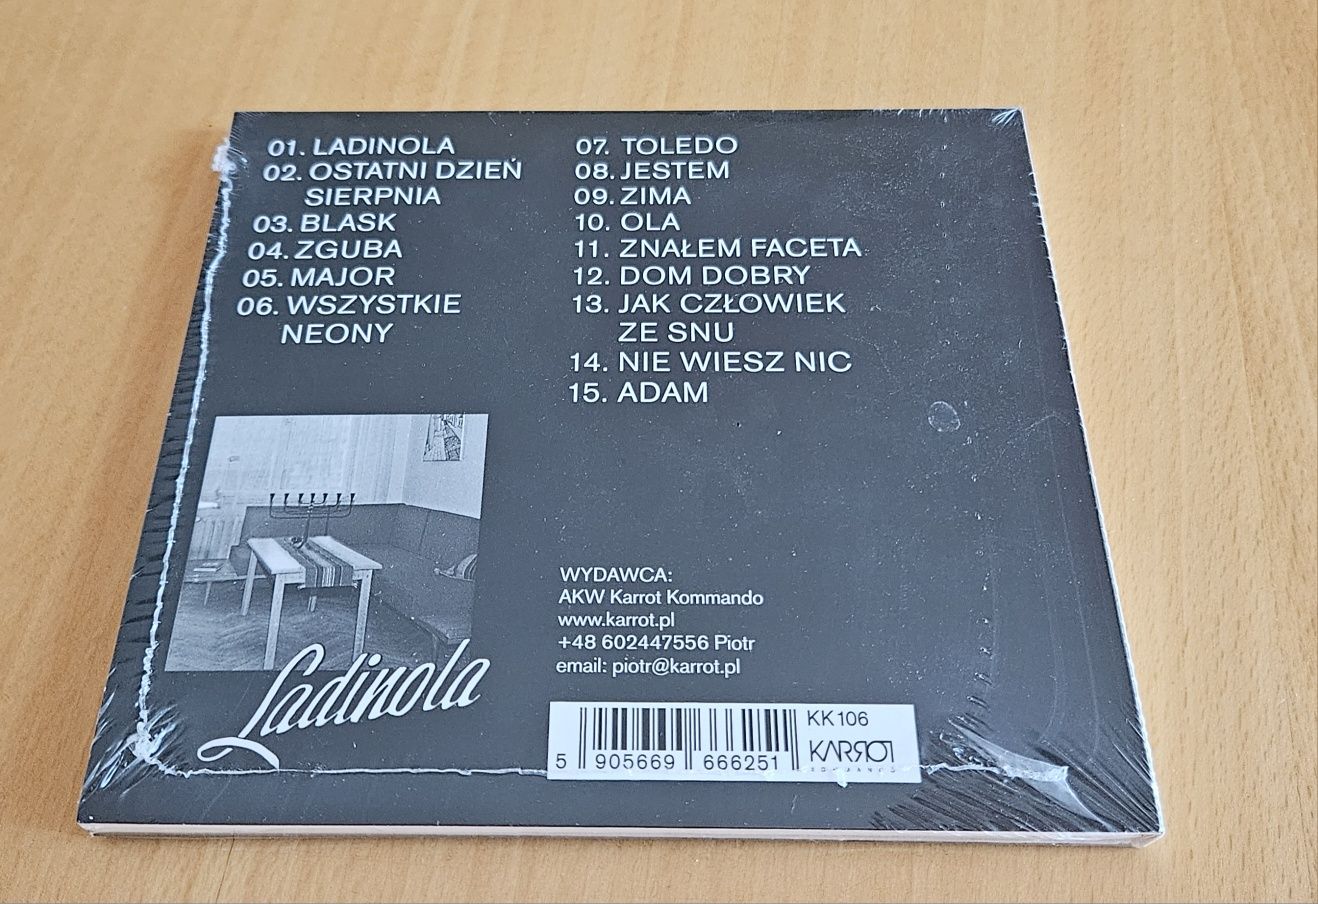 PABLOPAVO I LUDZIKI - Ladinola NOWA płyta CD
Pablopavo & Ludziki